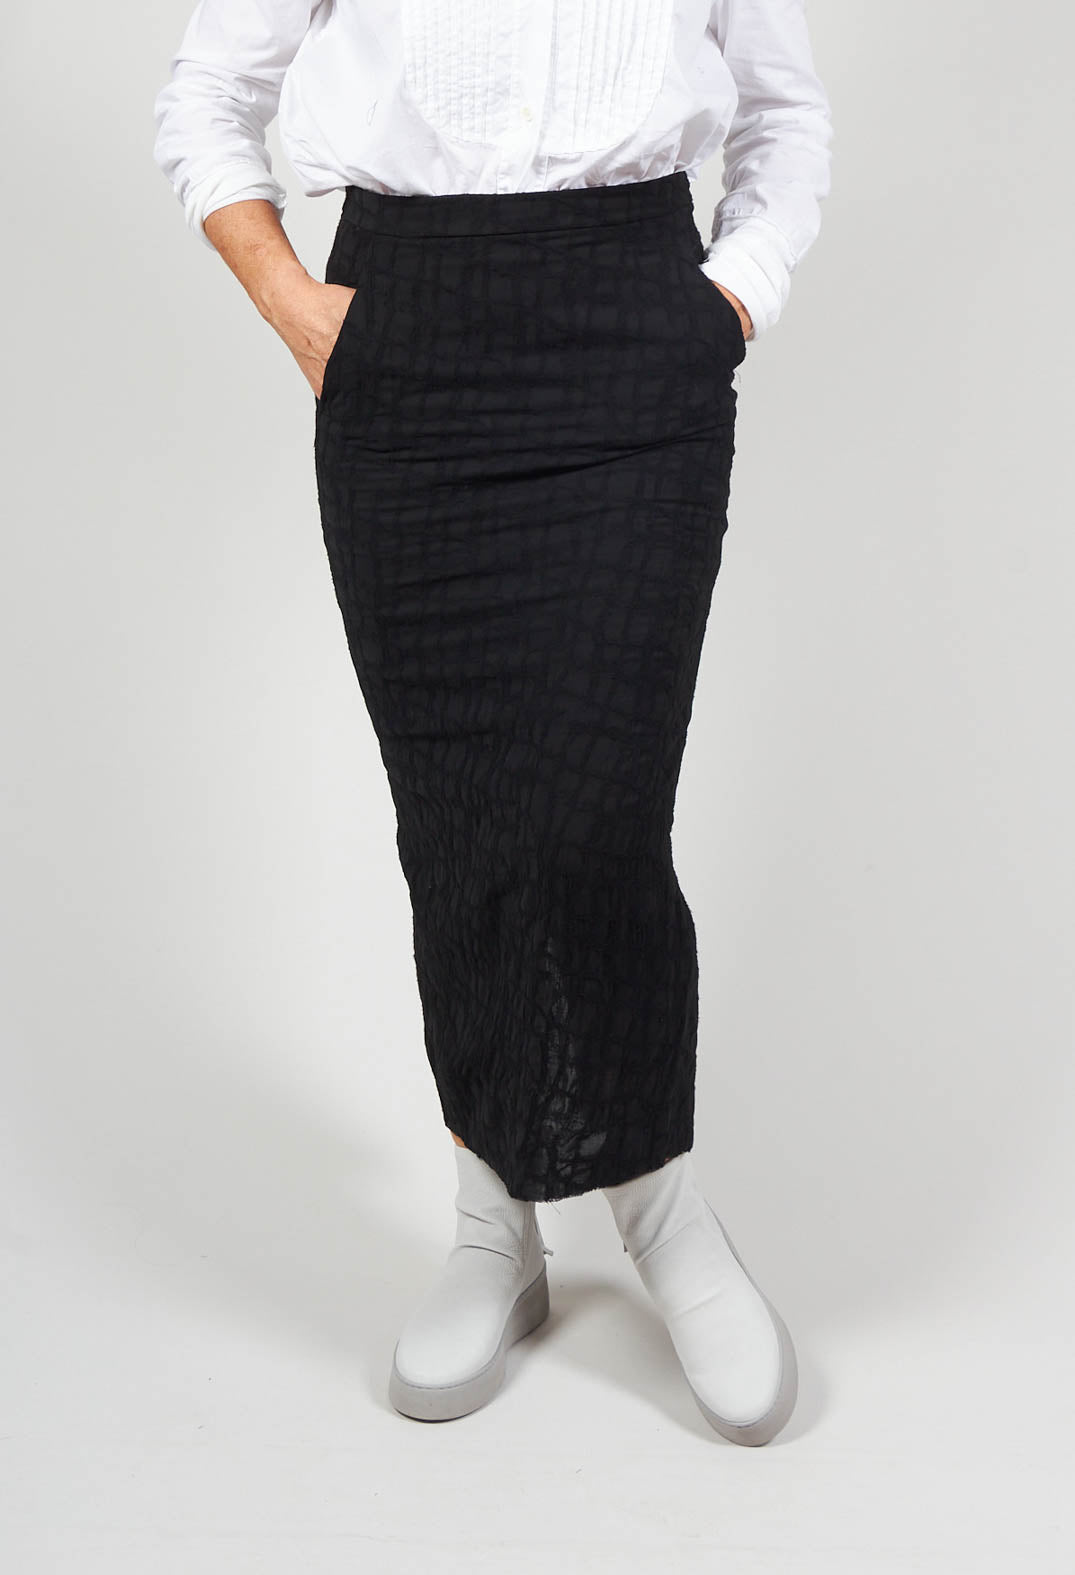 Silky Slim Skirt with Split in Black